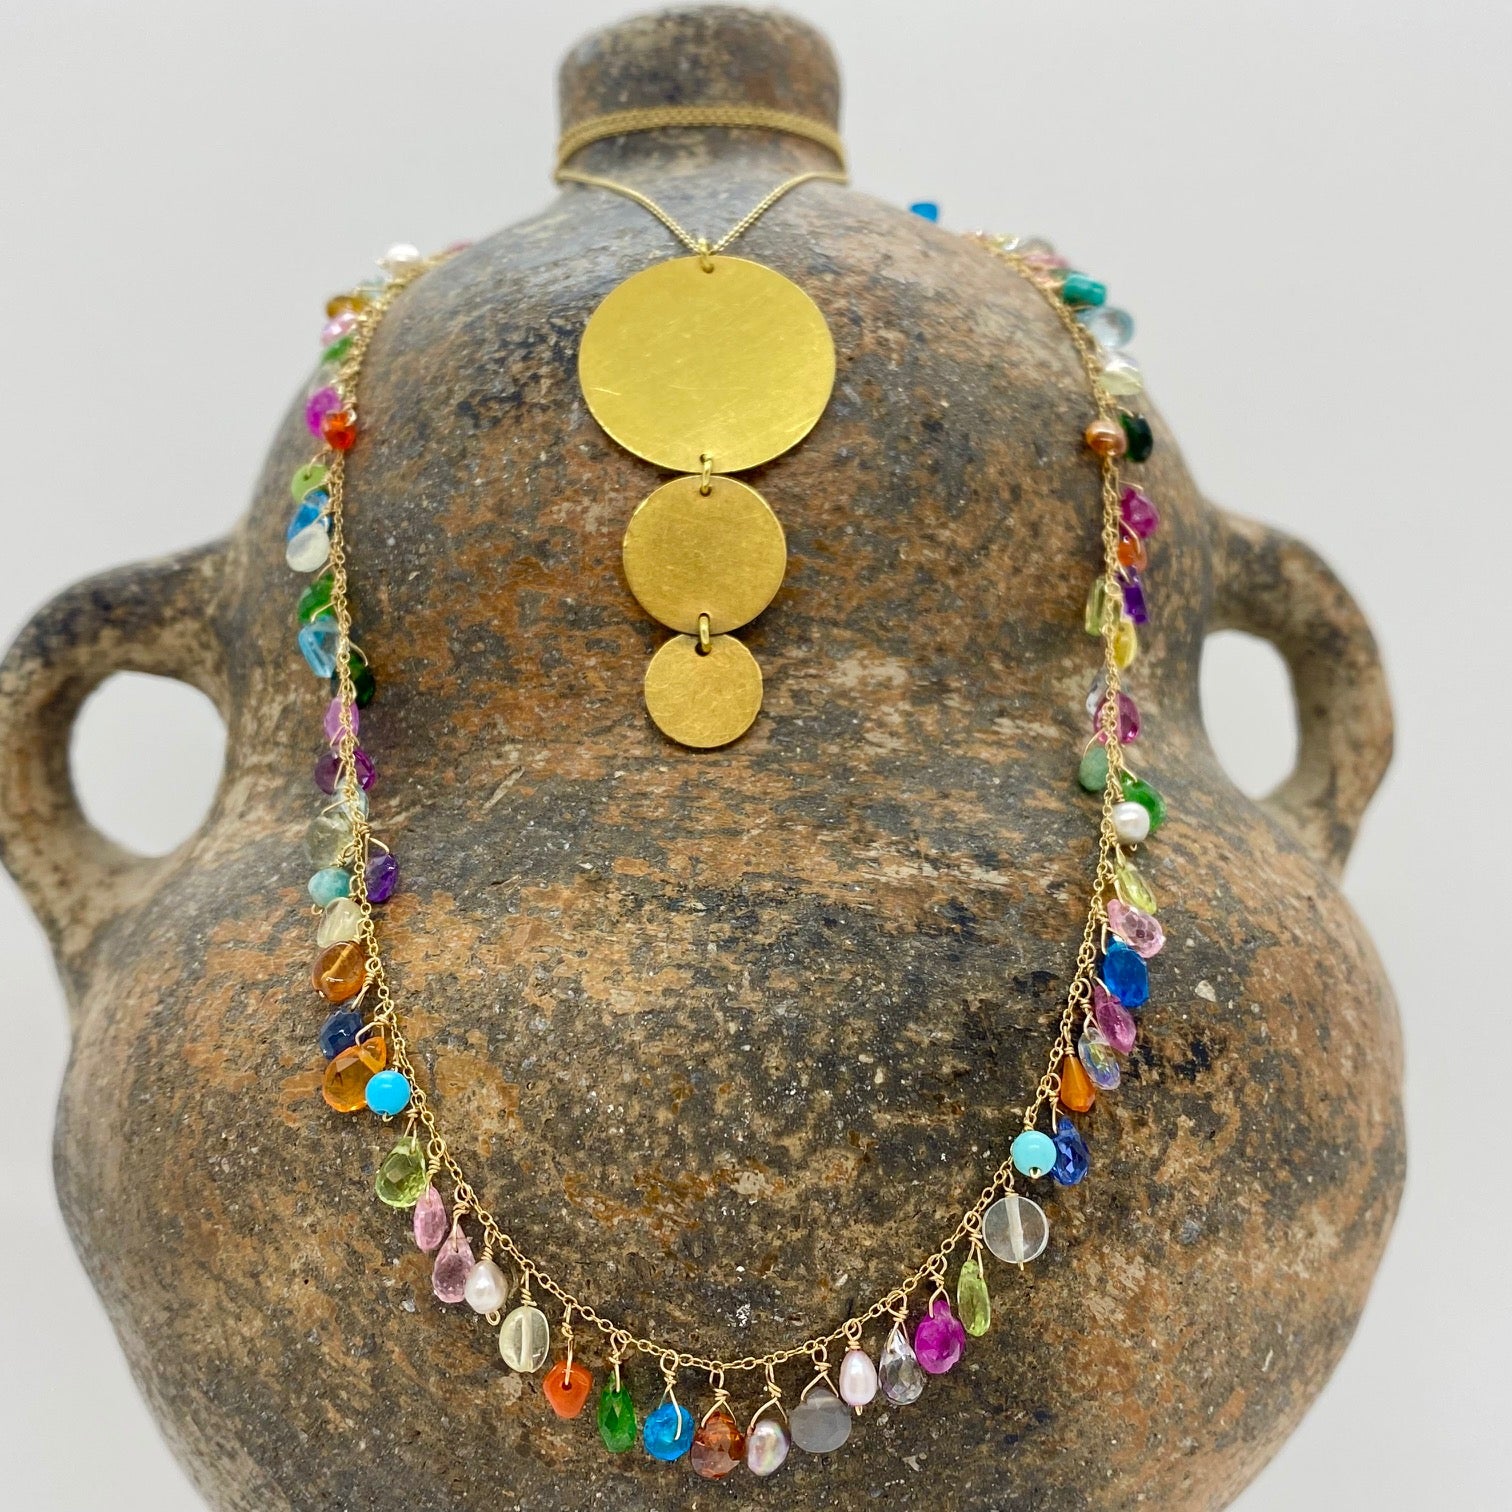 14k Gold Chain Necklace w/ Precious & Semi-Precious Stones